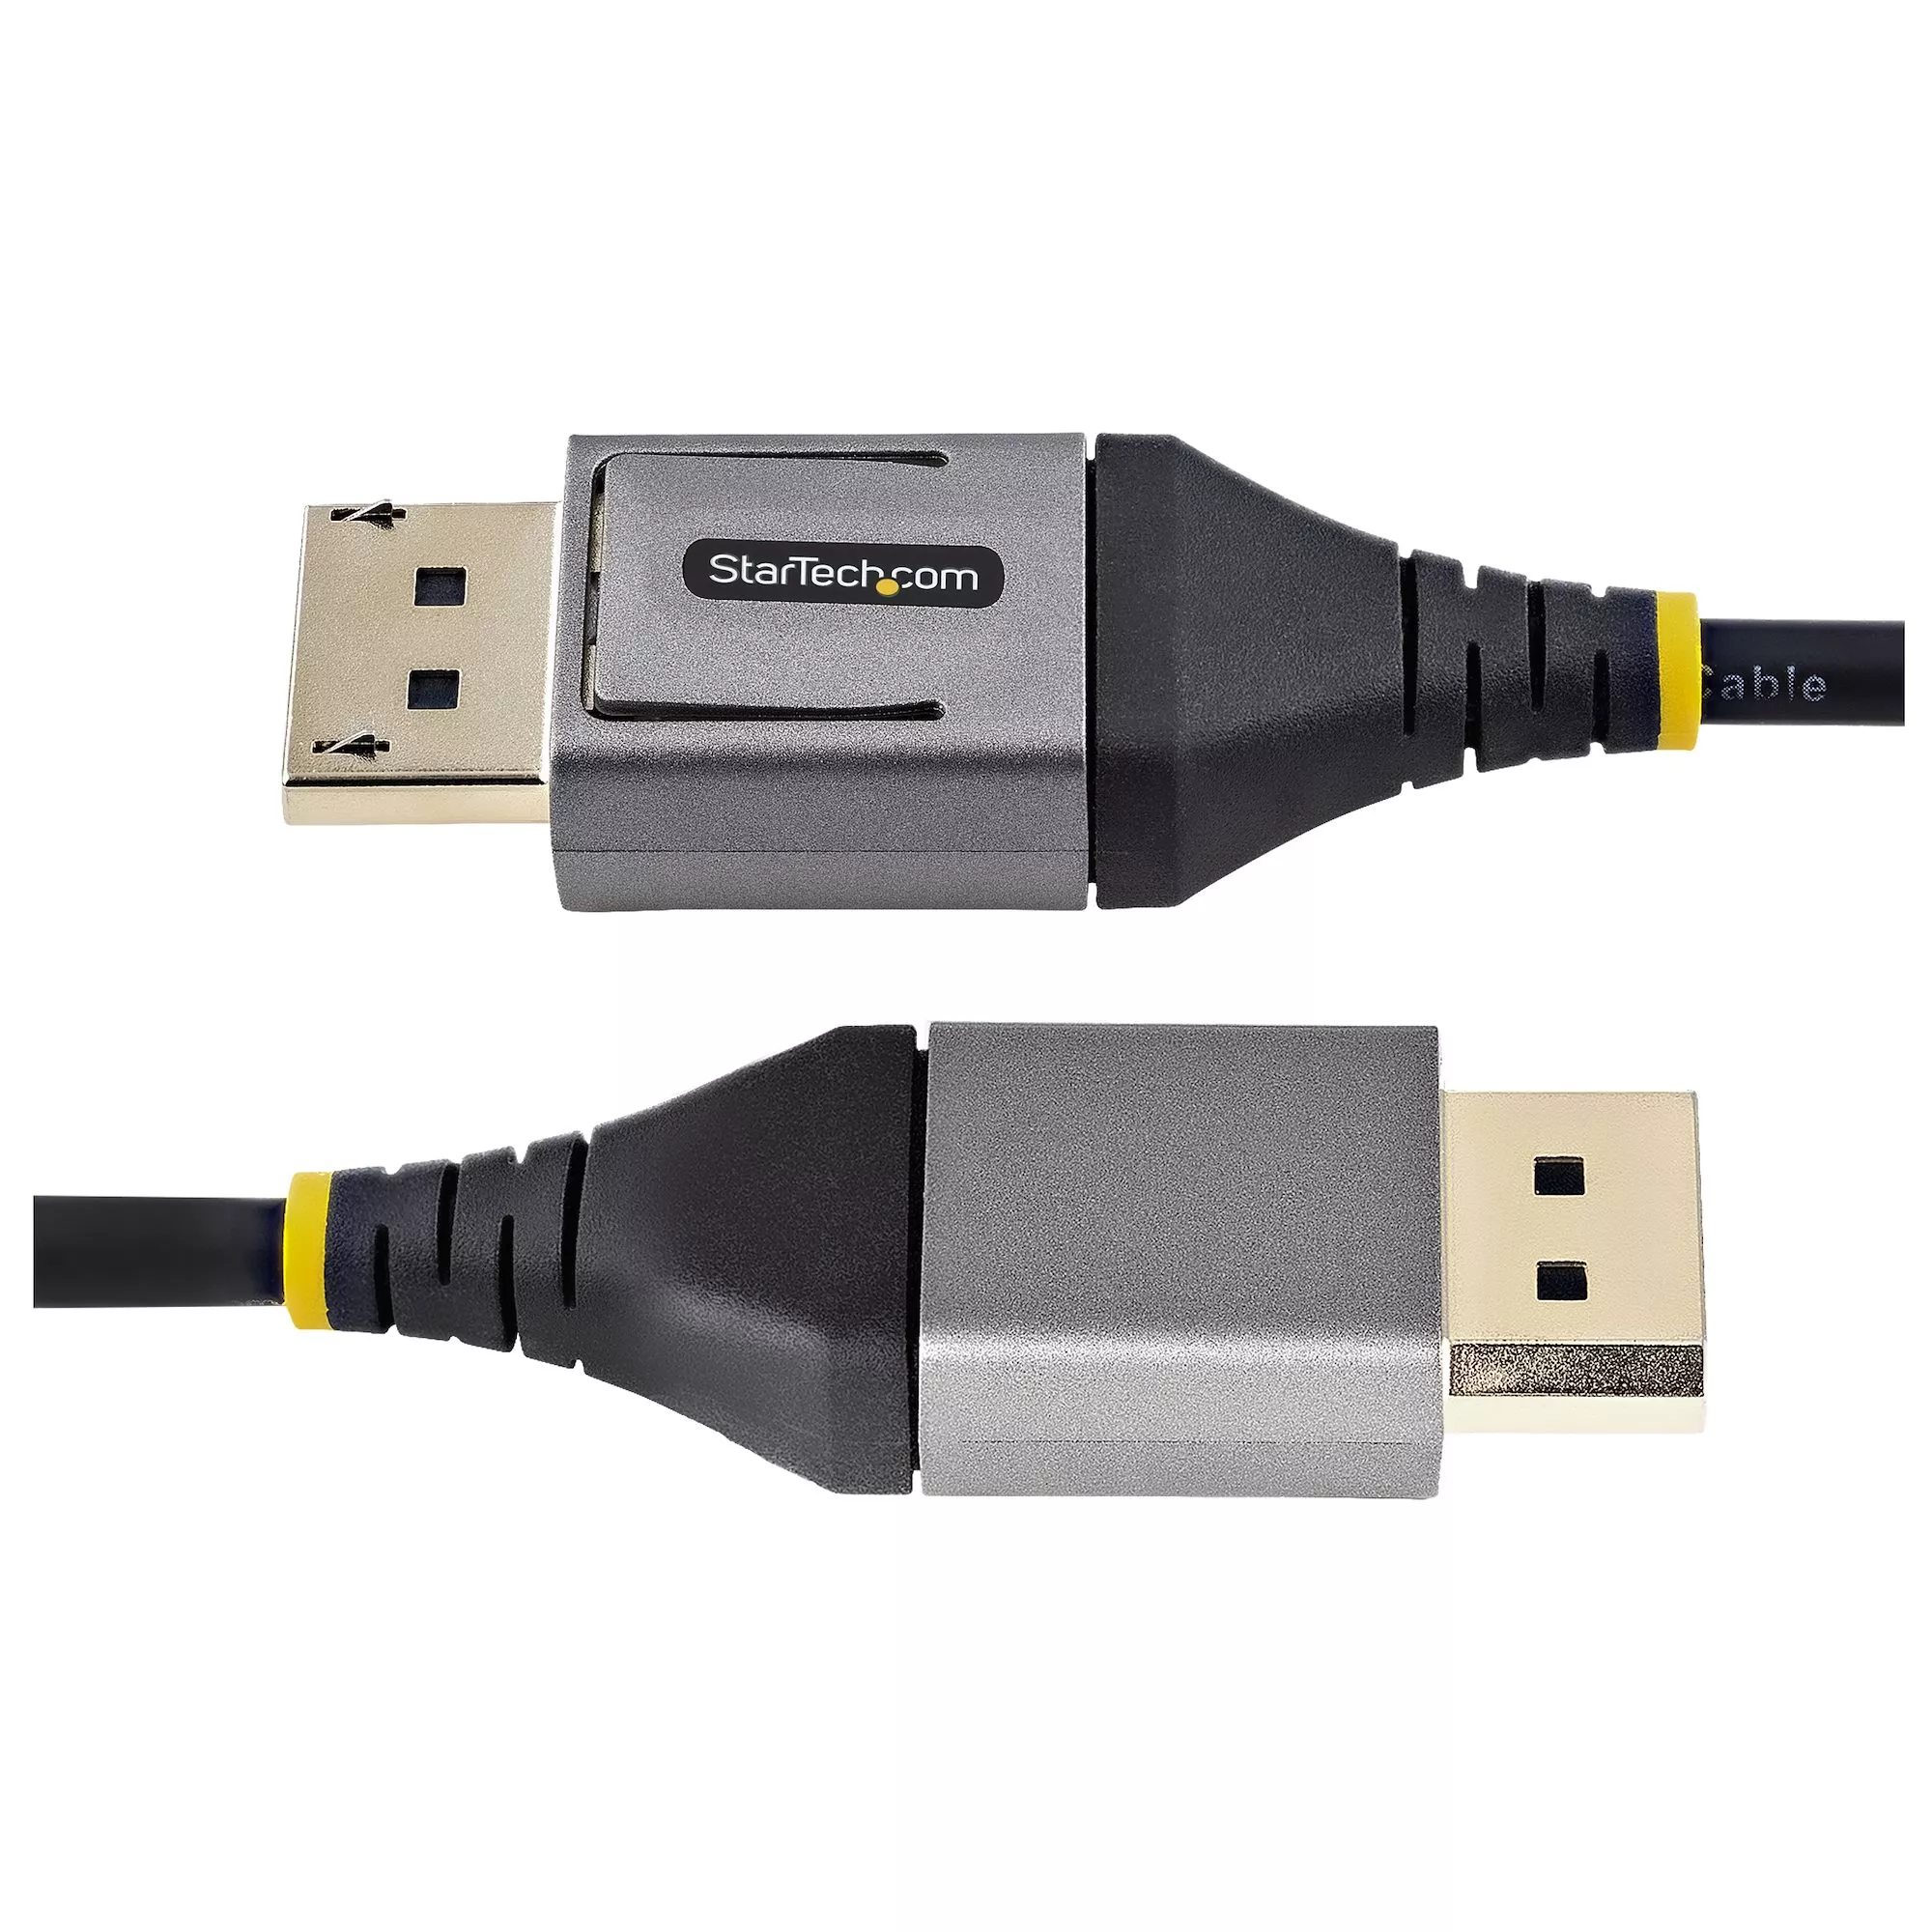 Achat StarTech.com Câble DisplayPort 1.4 Certifié VESA 5m - sur hello RSE - visuel 3